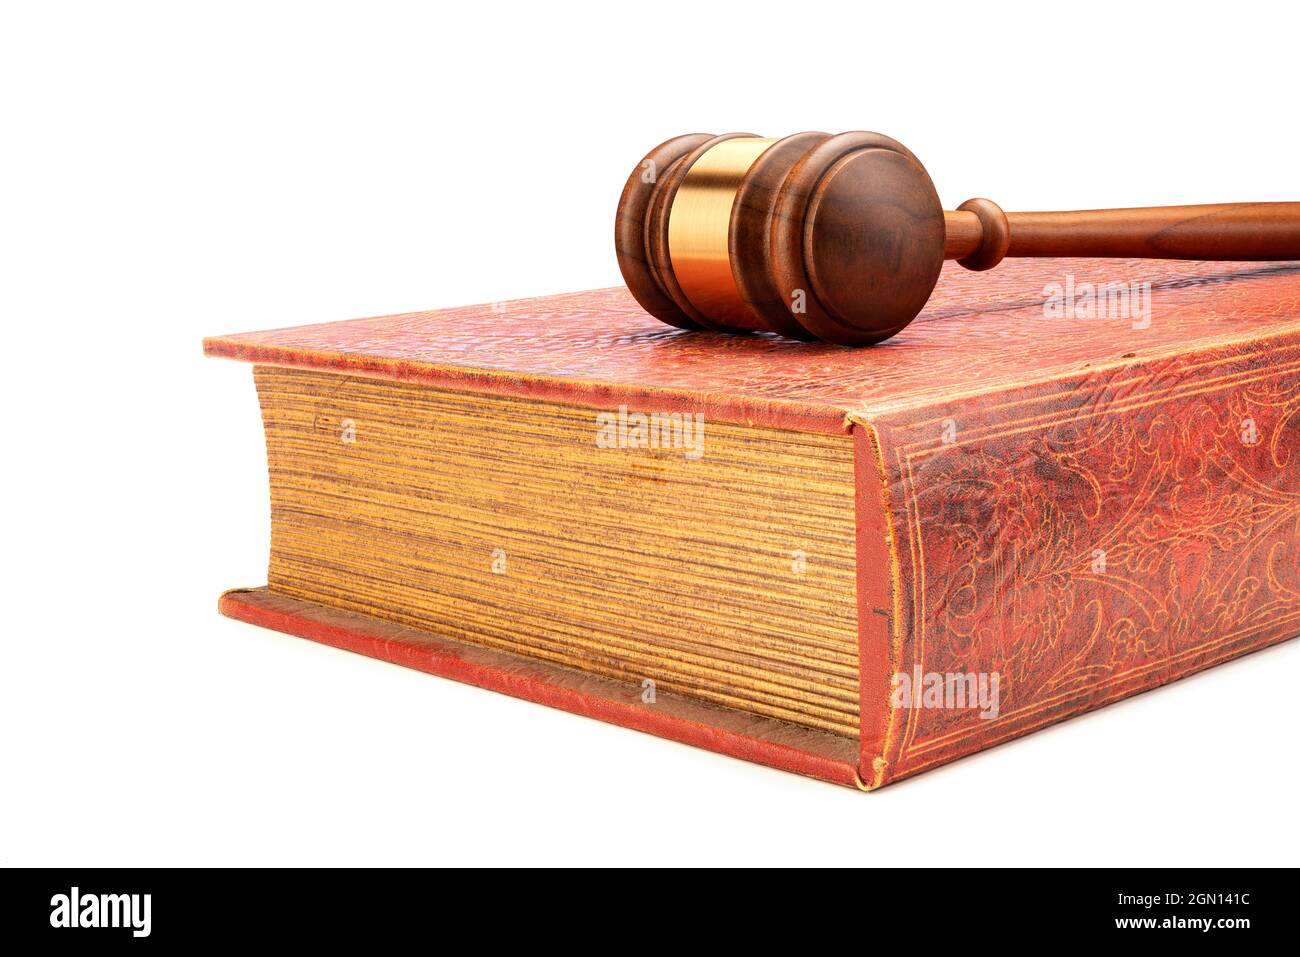 Le gaval et les menottes d'un juge reposent sur un livre de droit ancien encadré sur un fond blanc pour faciliter le placement de la copie. Banque D'Images